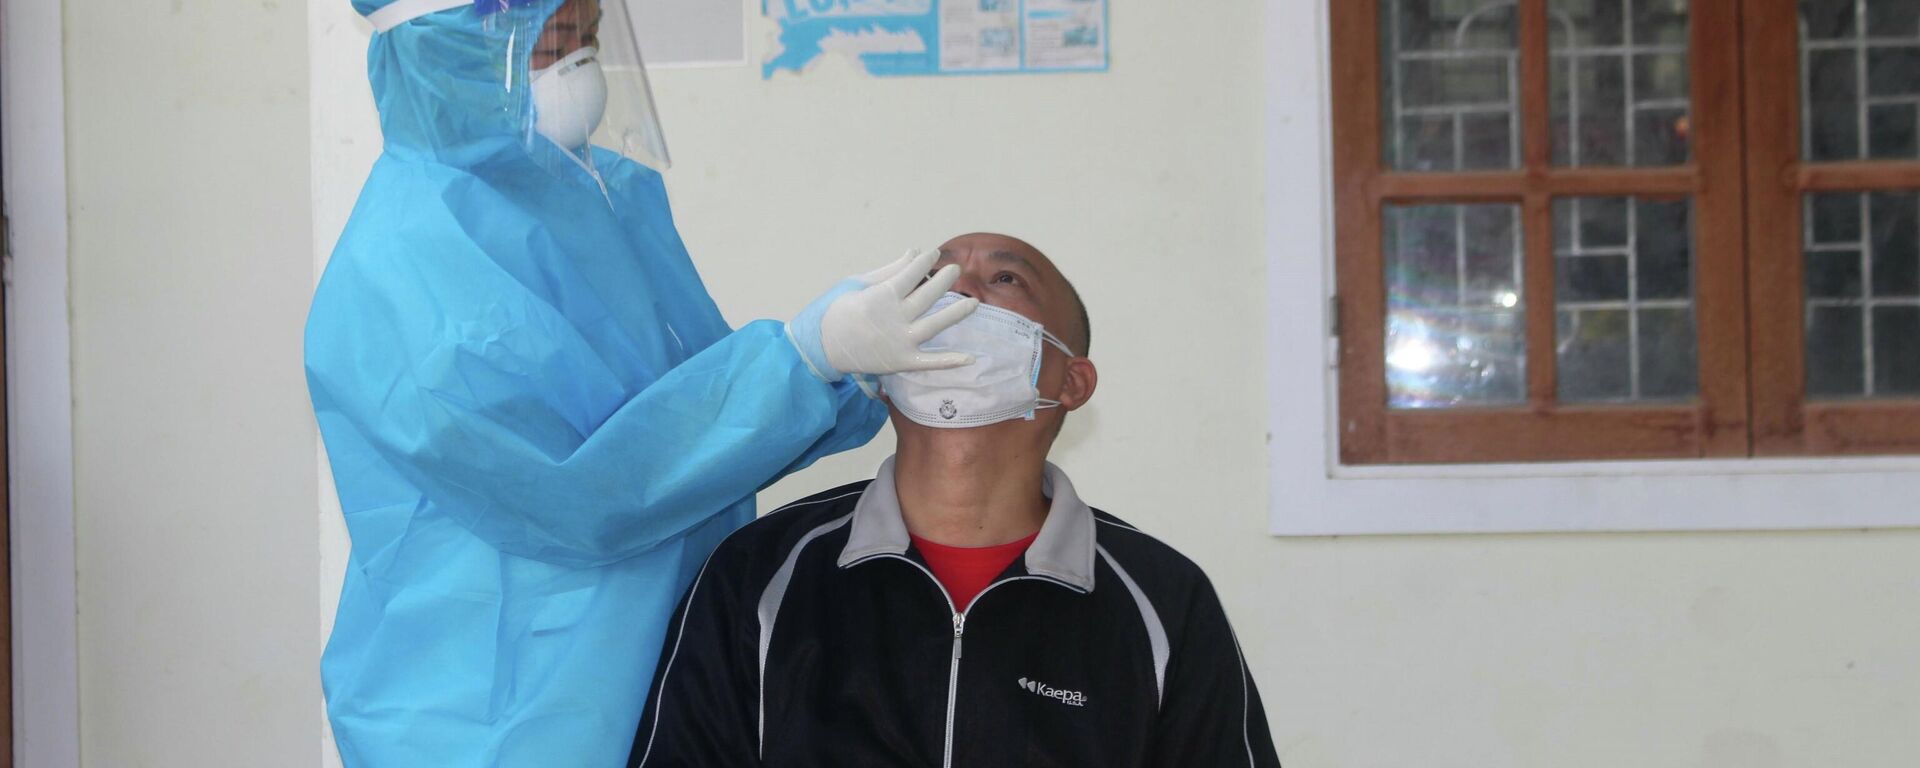  Nhân viên y tế huyện Con Cuông lấy mẫu test nhanh cho người dân địa phương - Sputnik Việt Nam, 1920, 28.12.2021